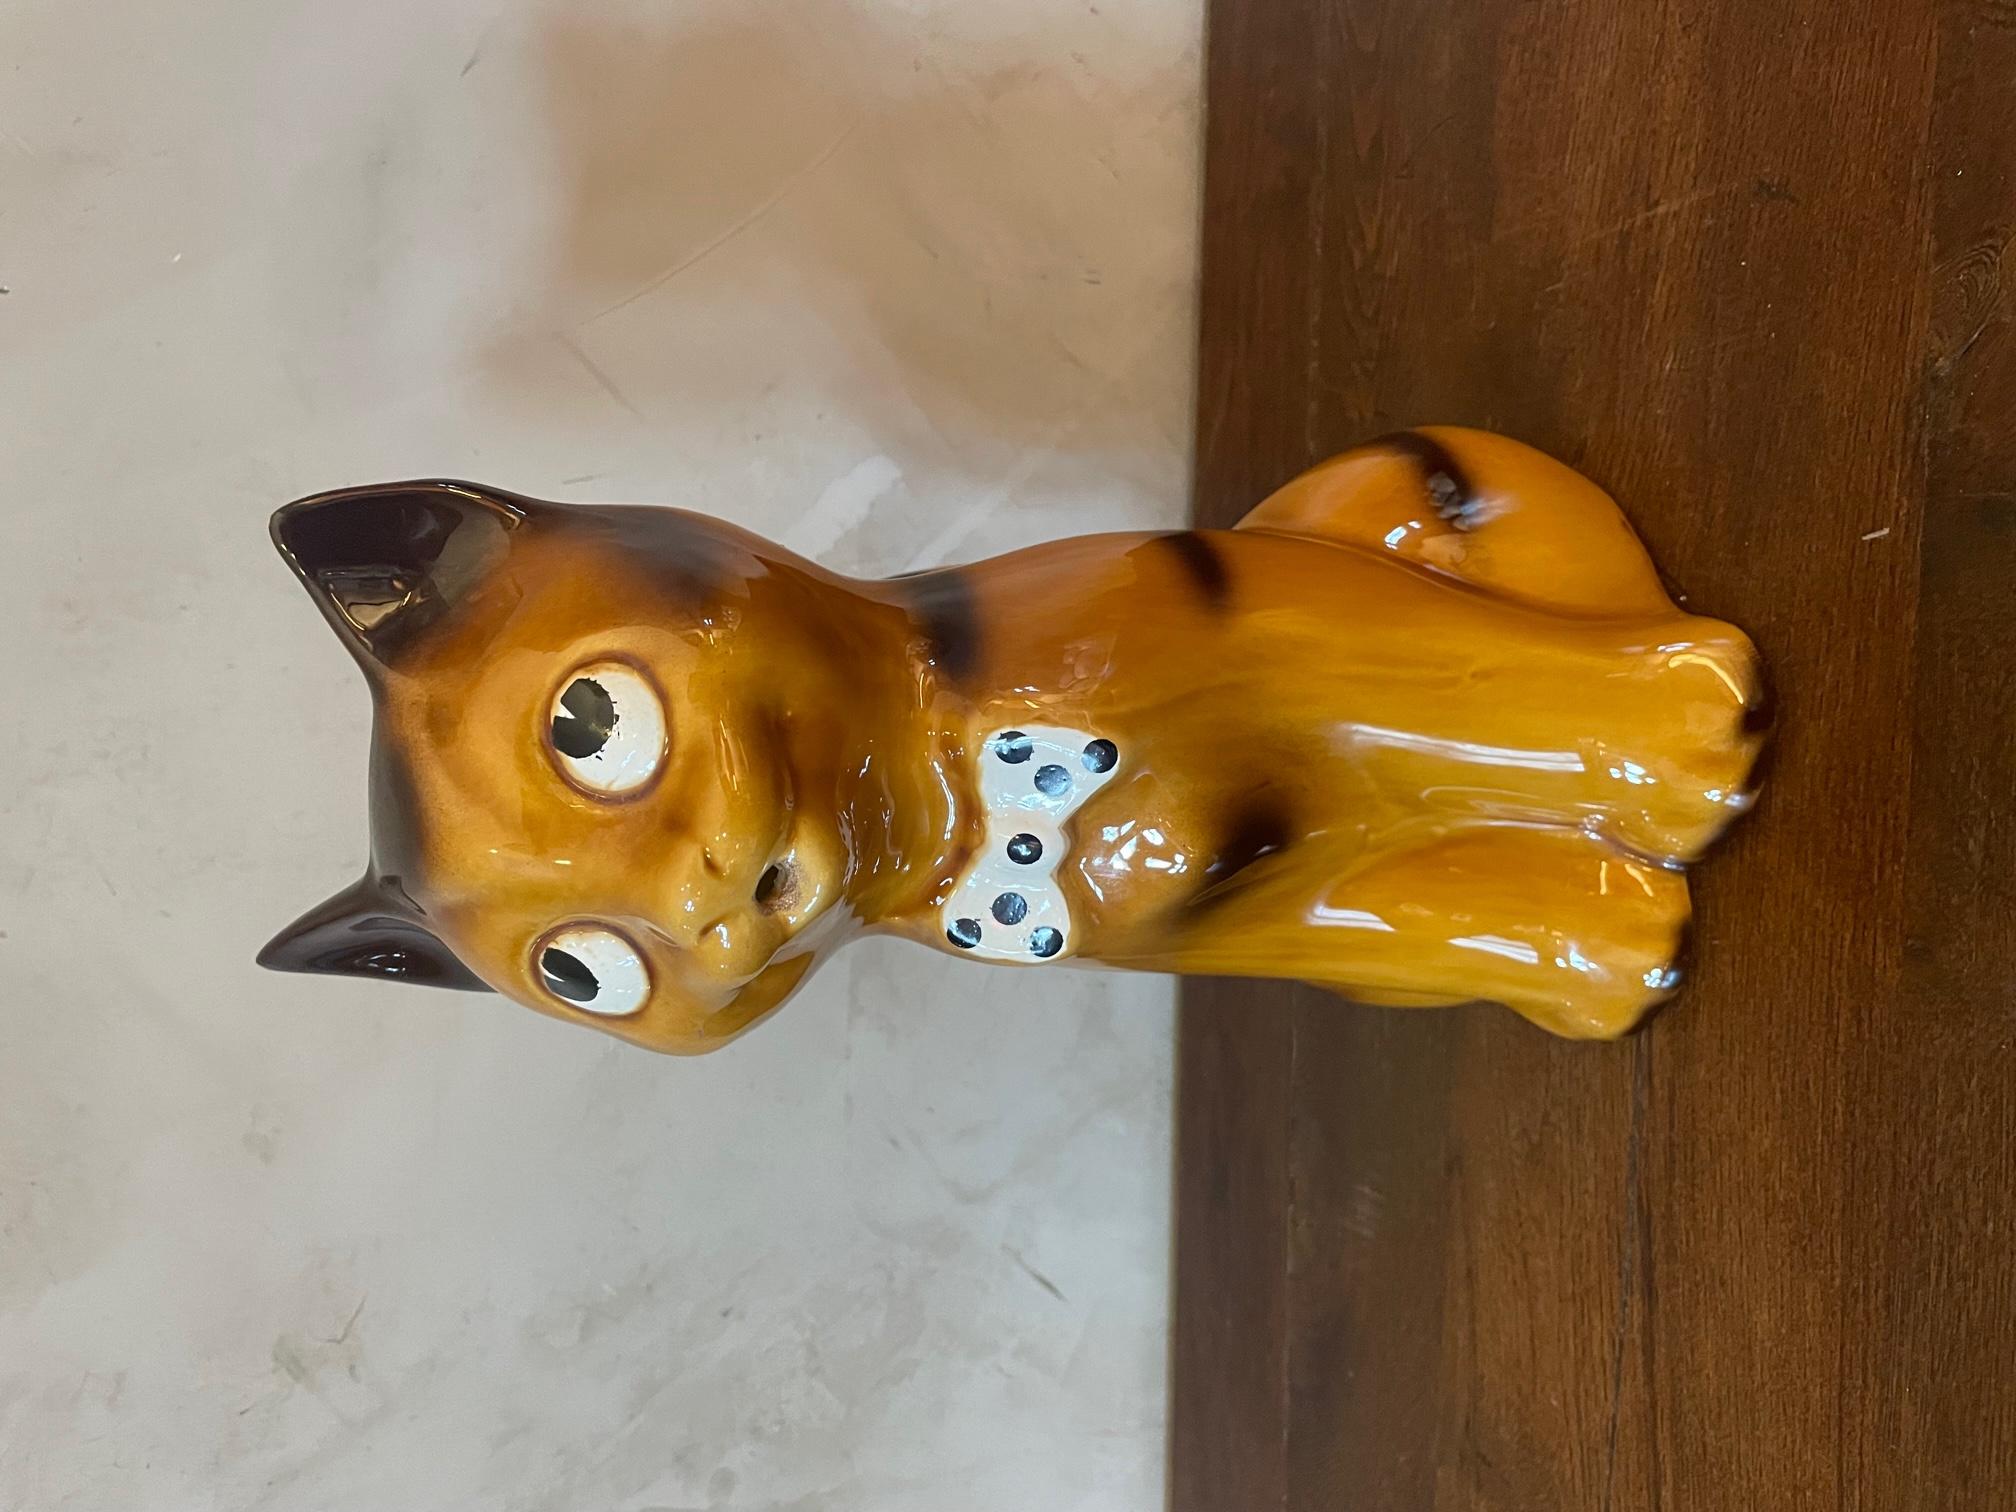 Très joli pichet en céramique vintage avec une forme de chat roulant les yeux vers le haut. Grande dimension. 
(petites rayures sur les oreilles) Bon état général.